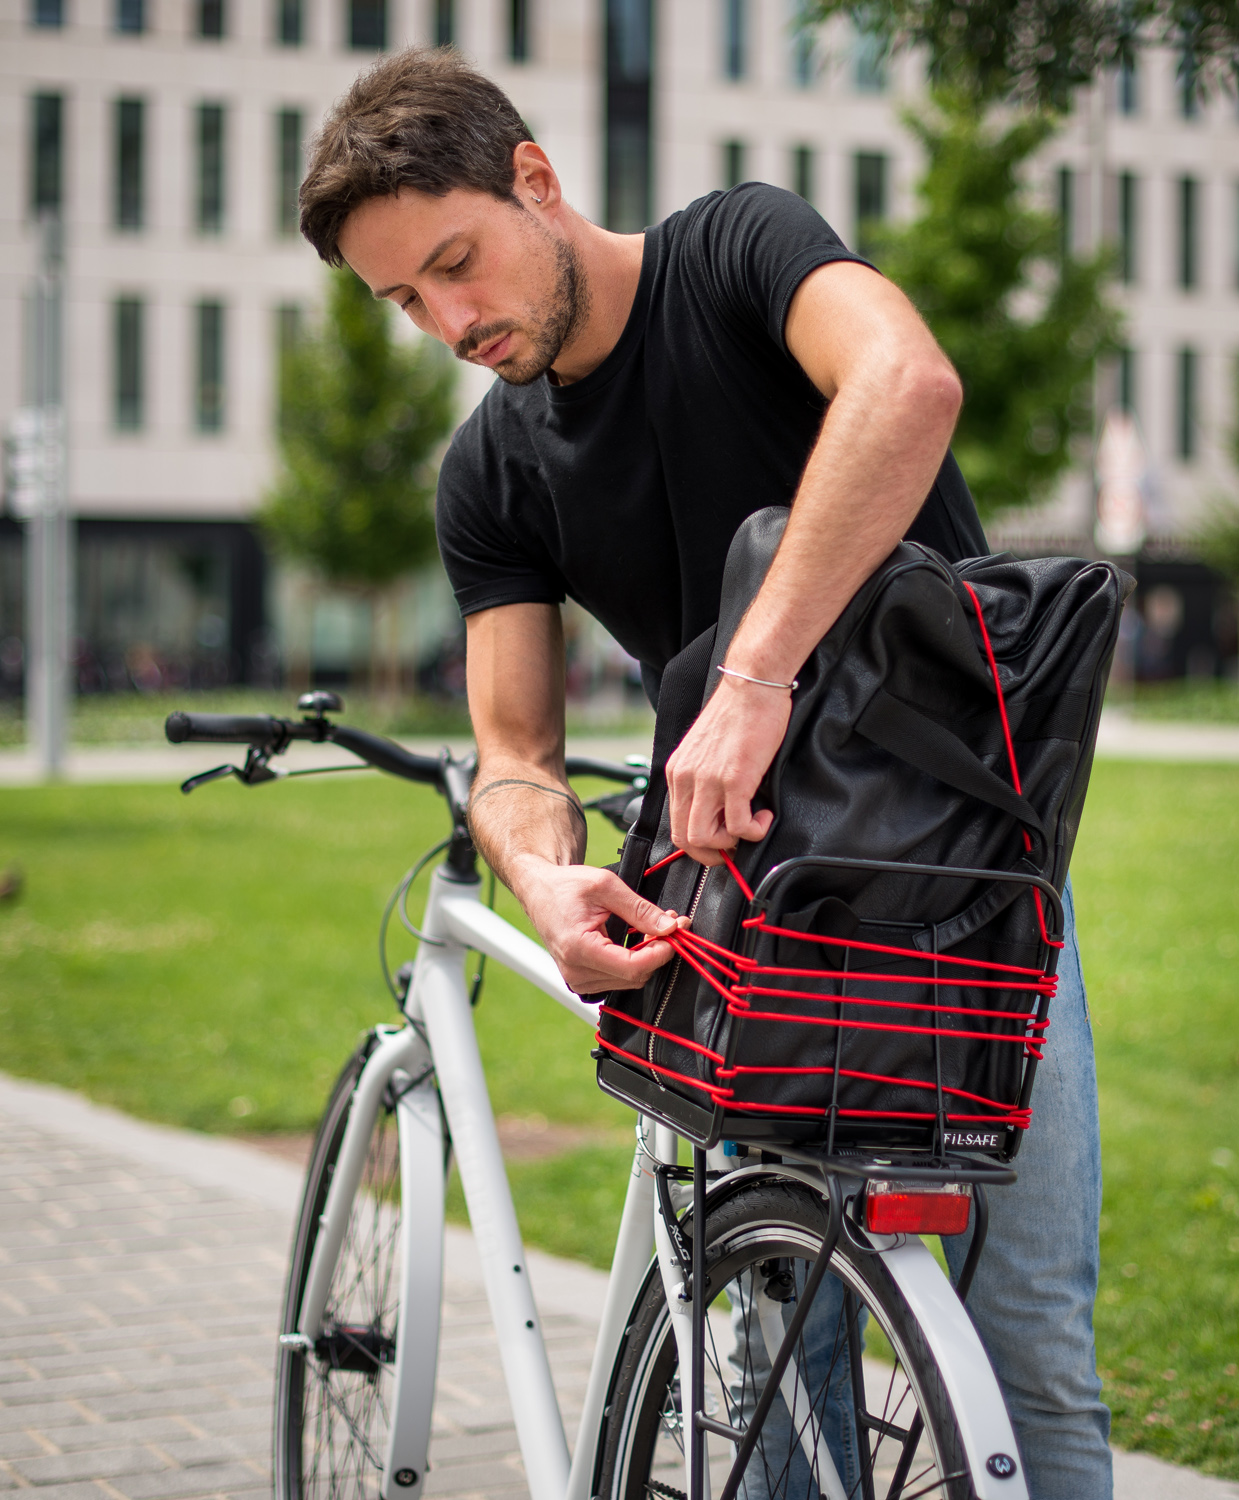 panier-velo-transport-flexible-sandow-bags-and-bike-I